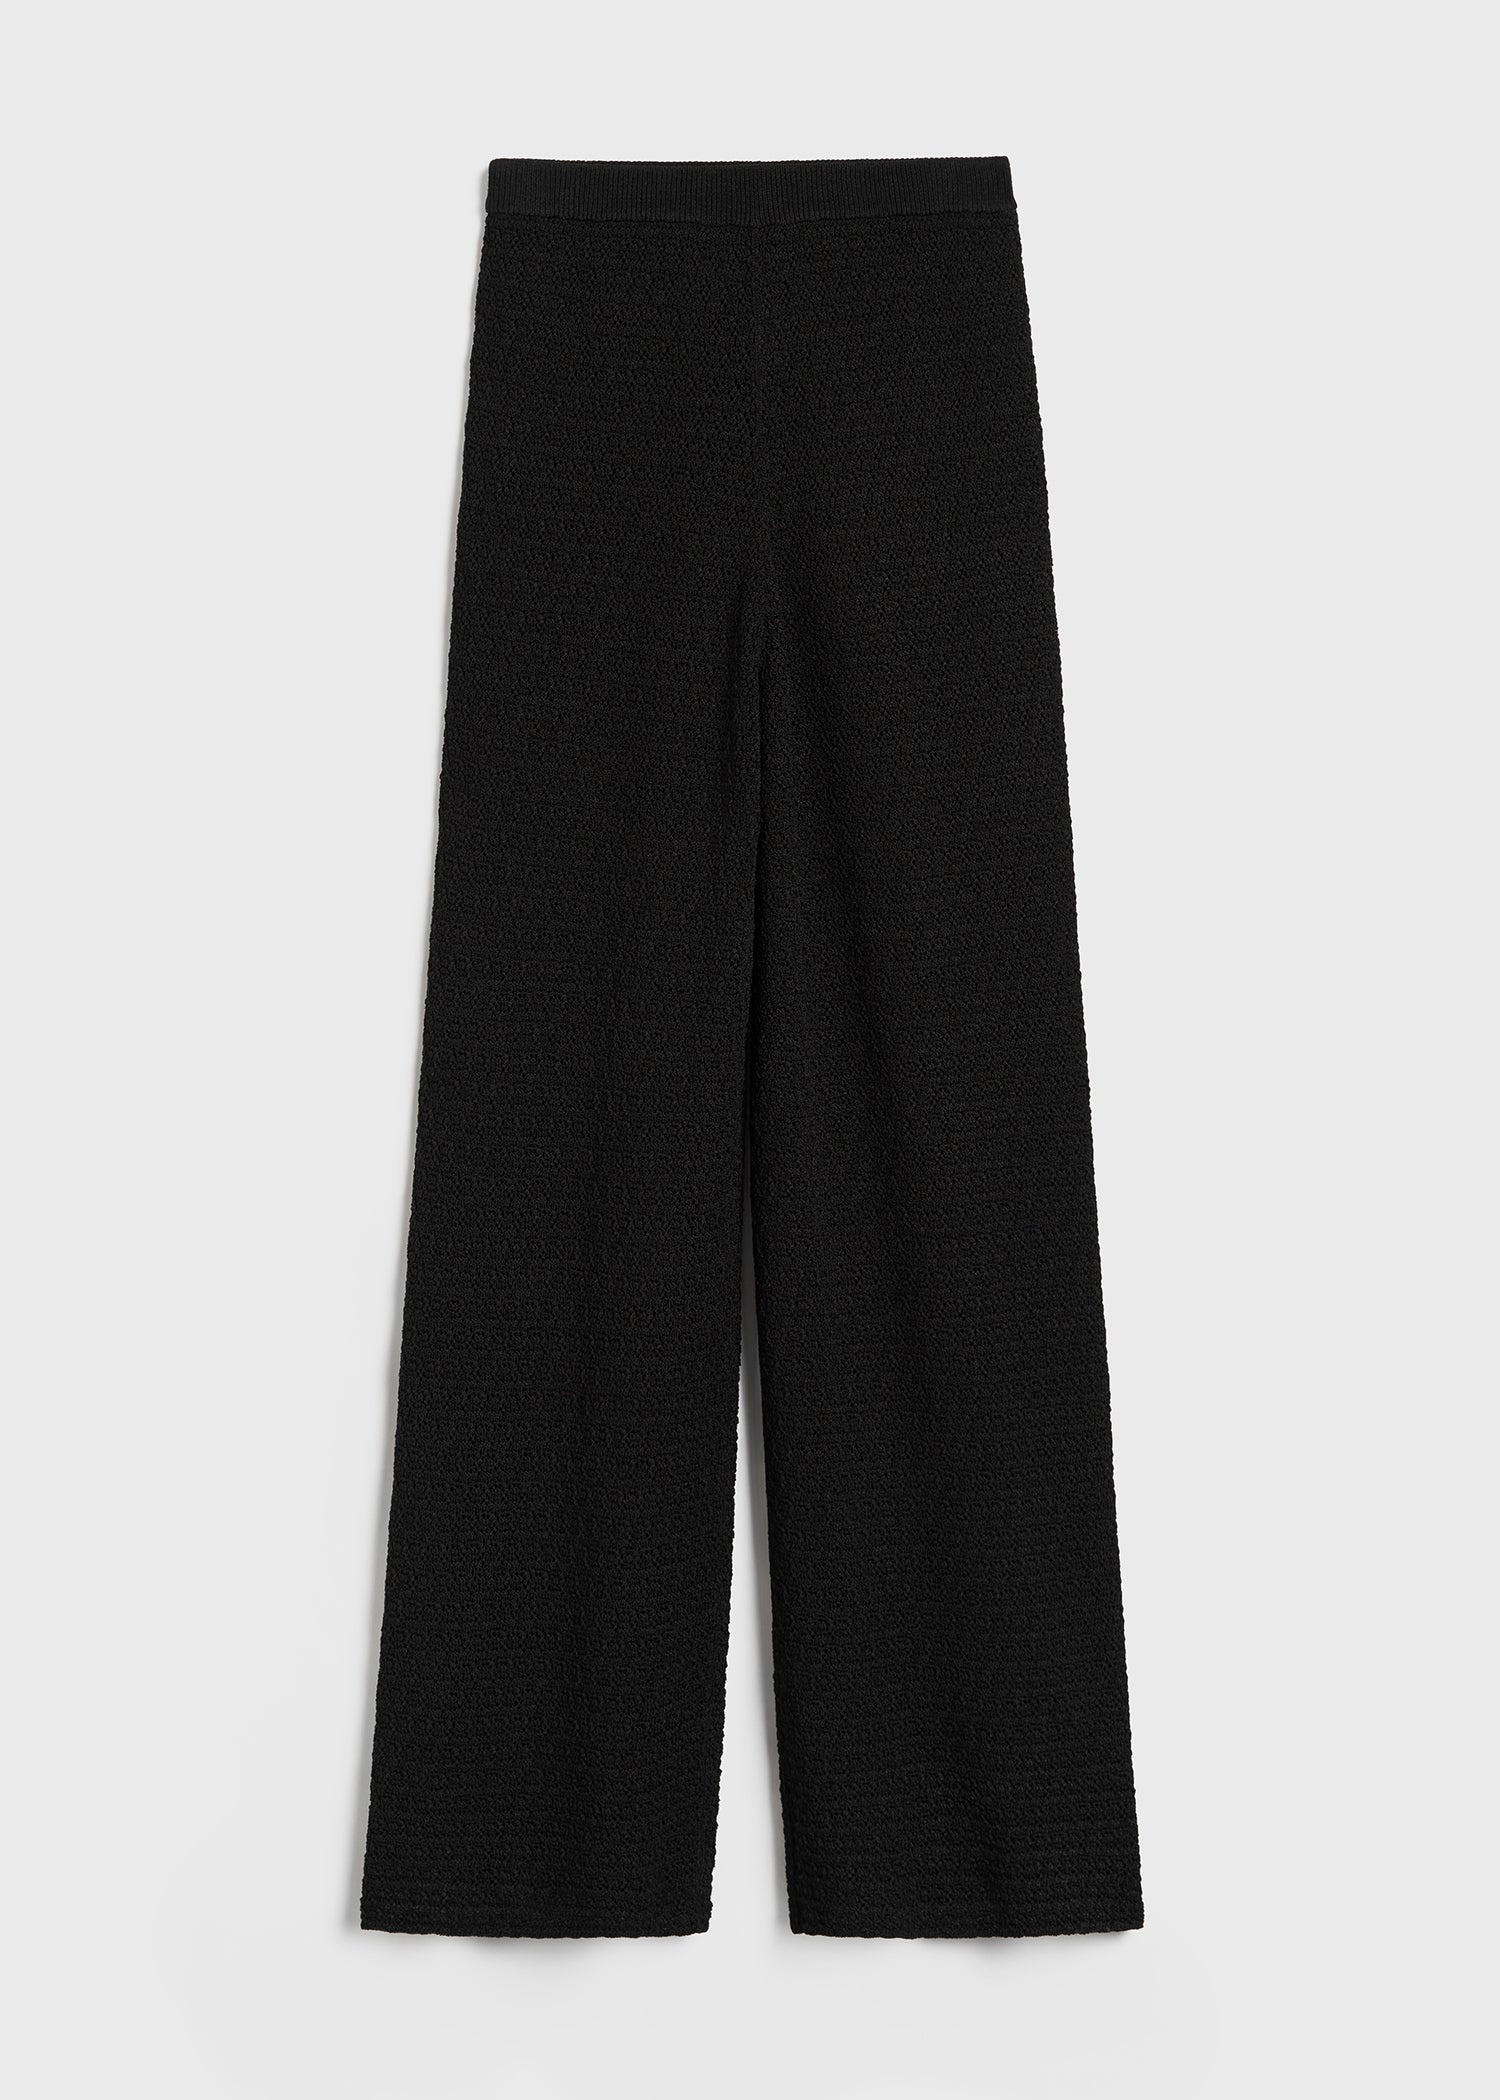 Crochet trousers black - 1